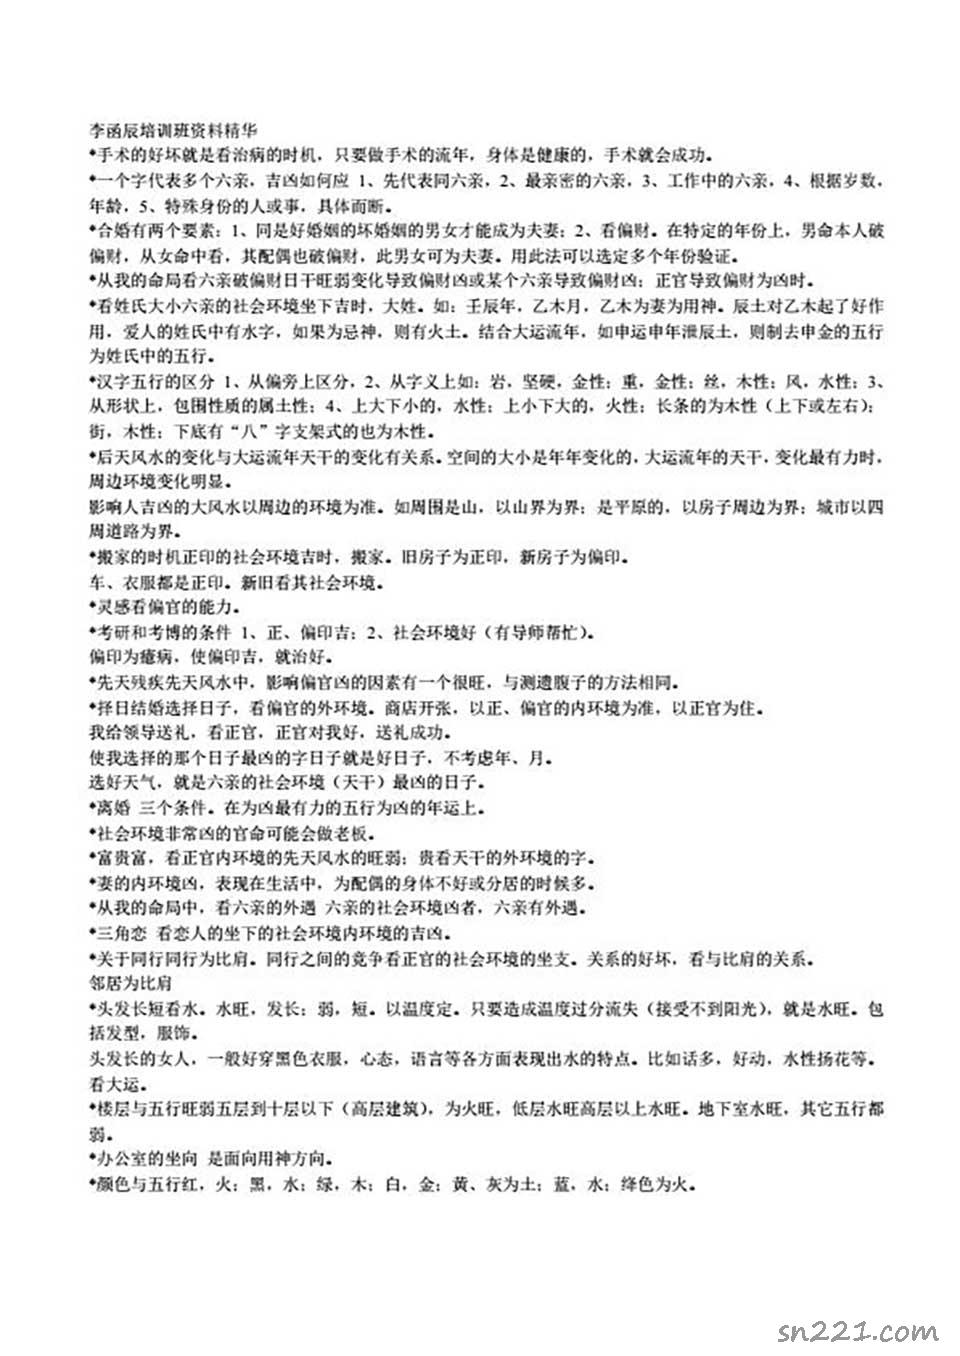 李函辰-培訓班資料精華22頁.pdf